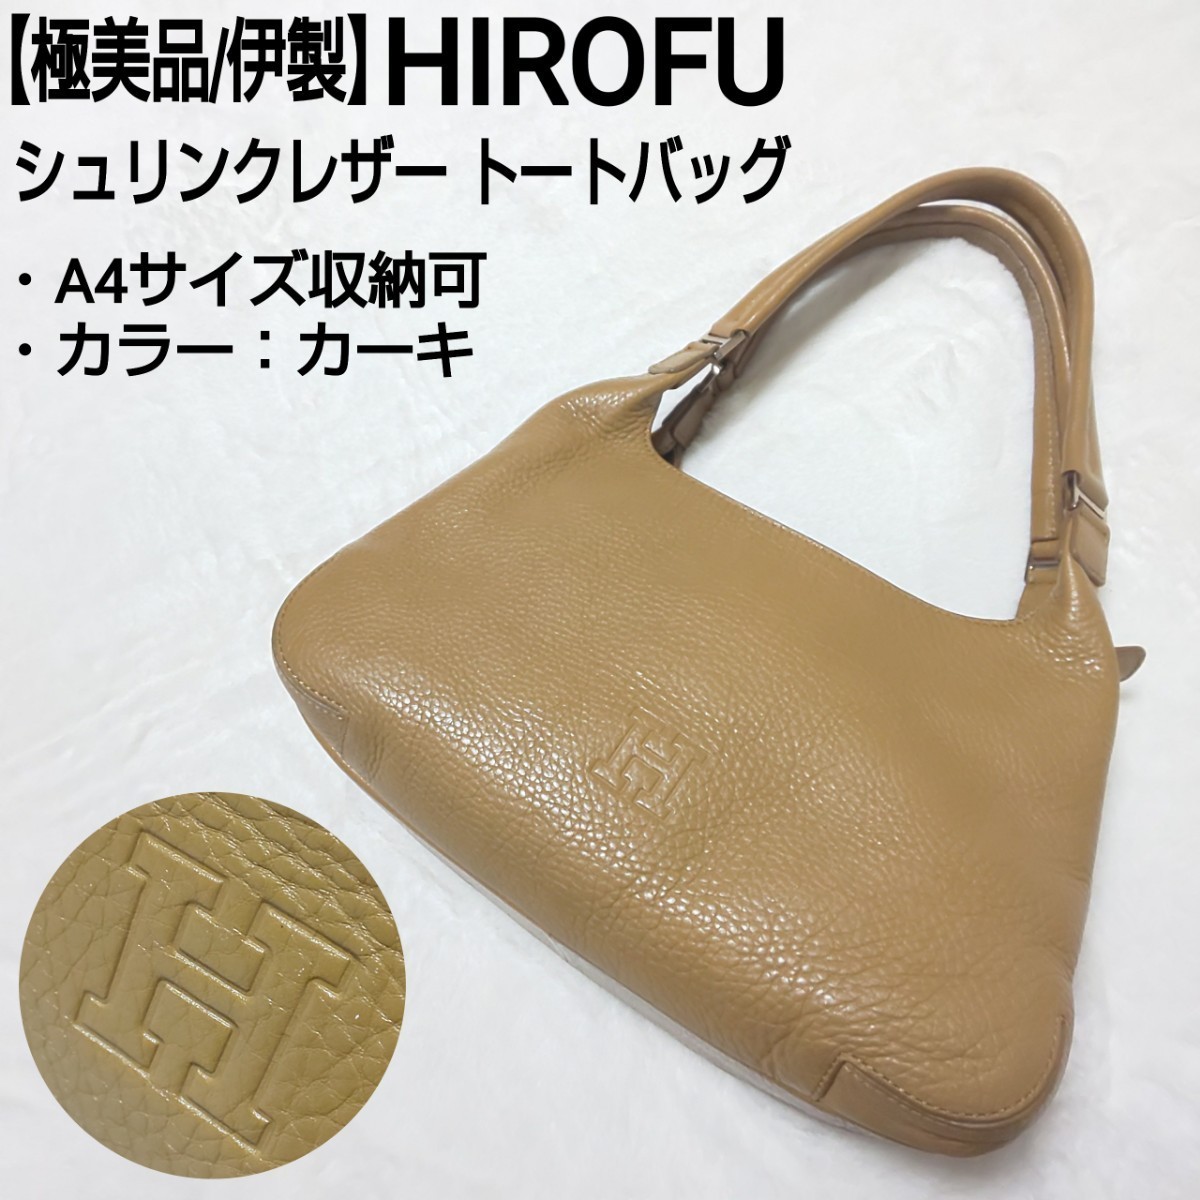 極美品/伊製】HIROFU ヒロフ Hロゴ シュリンクレザー ハンドバッグ